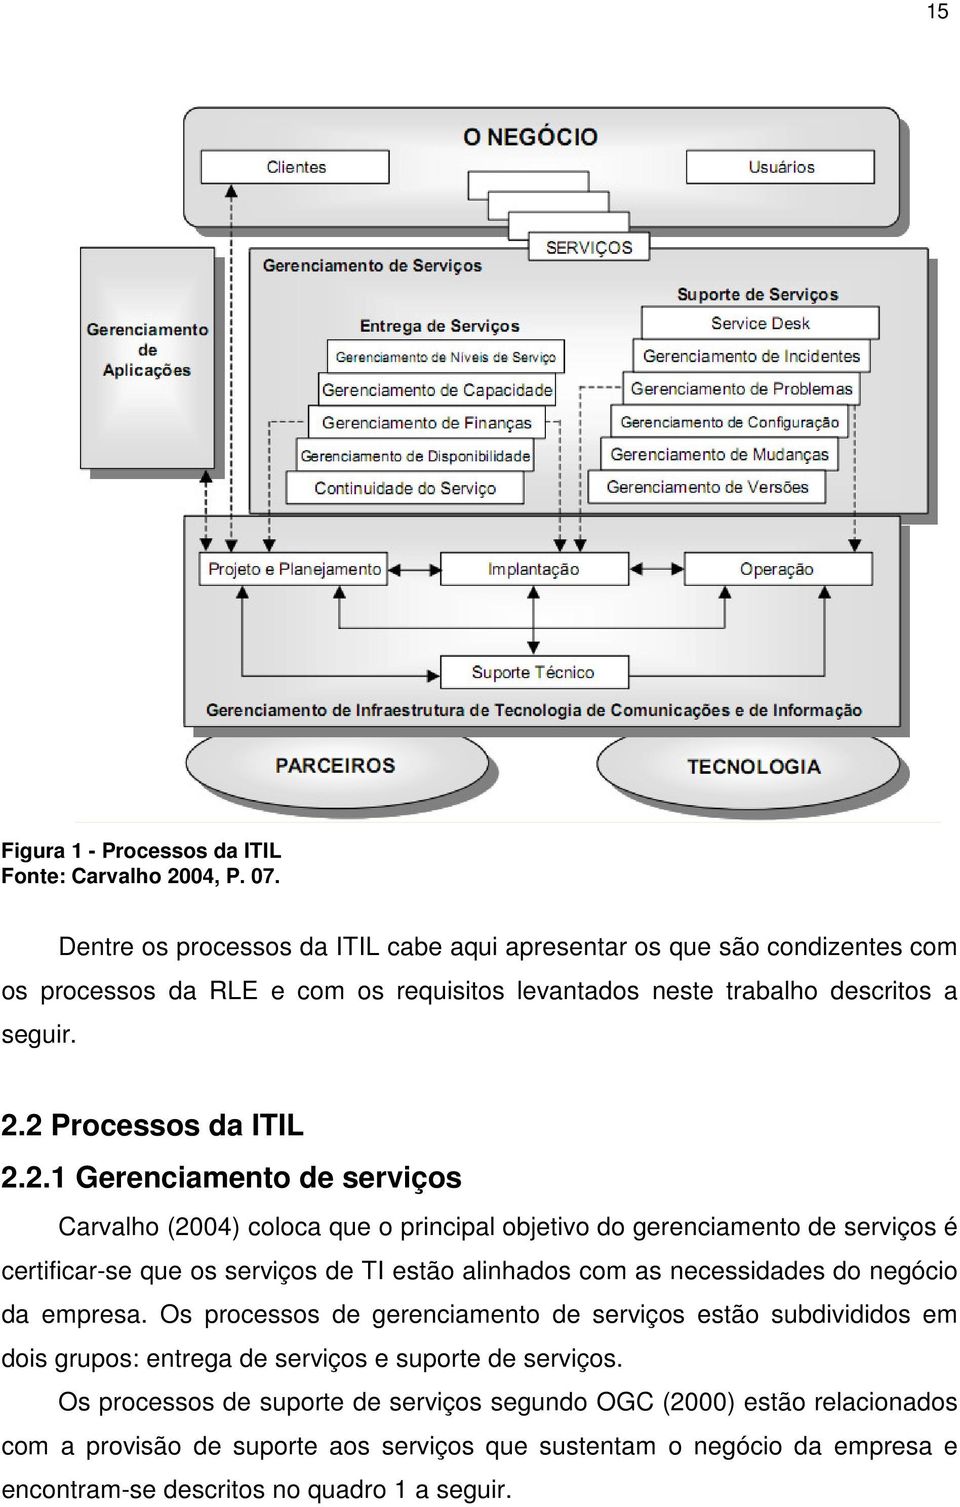 2 Processos da ITIL 2.2.1 Gerenciamento de serviços Carvalho (2004) coloca que o principal objetivo do gerenciamento de serviços é certificar-se que os serviços de TI estão alinhados com as